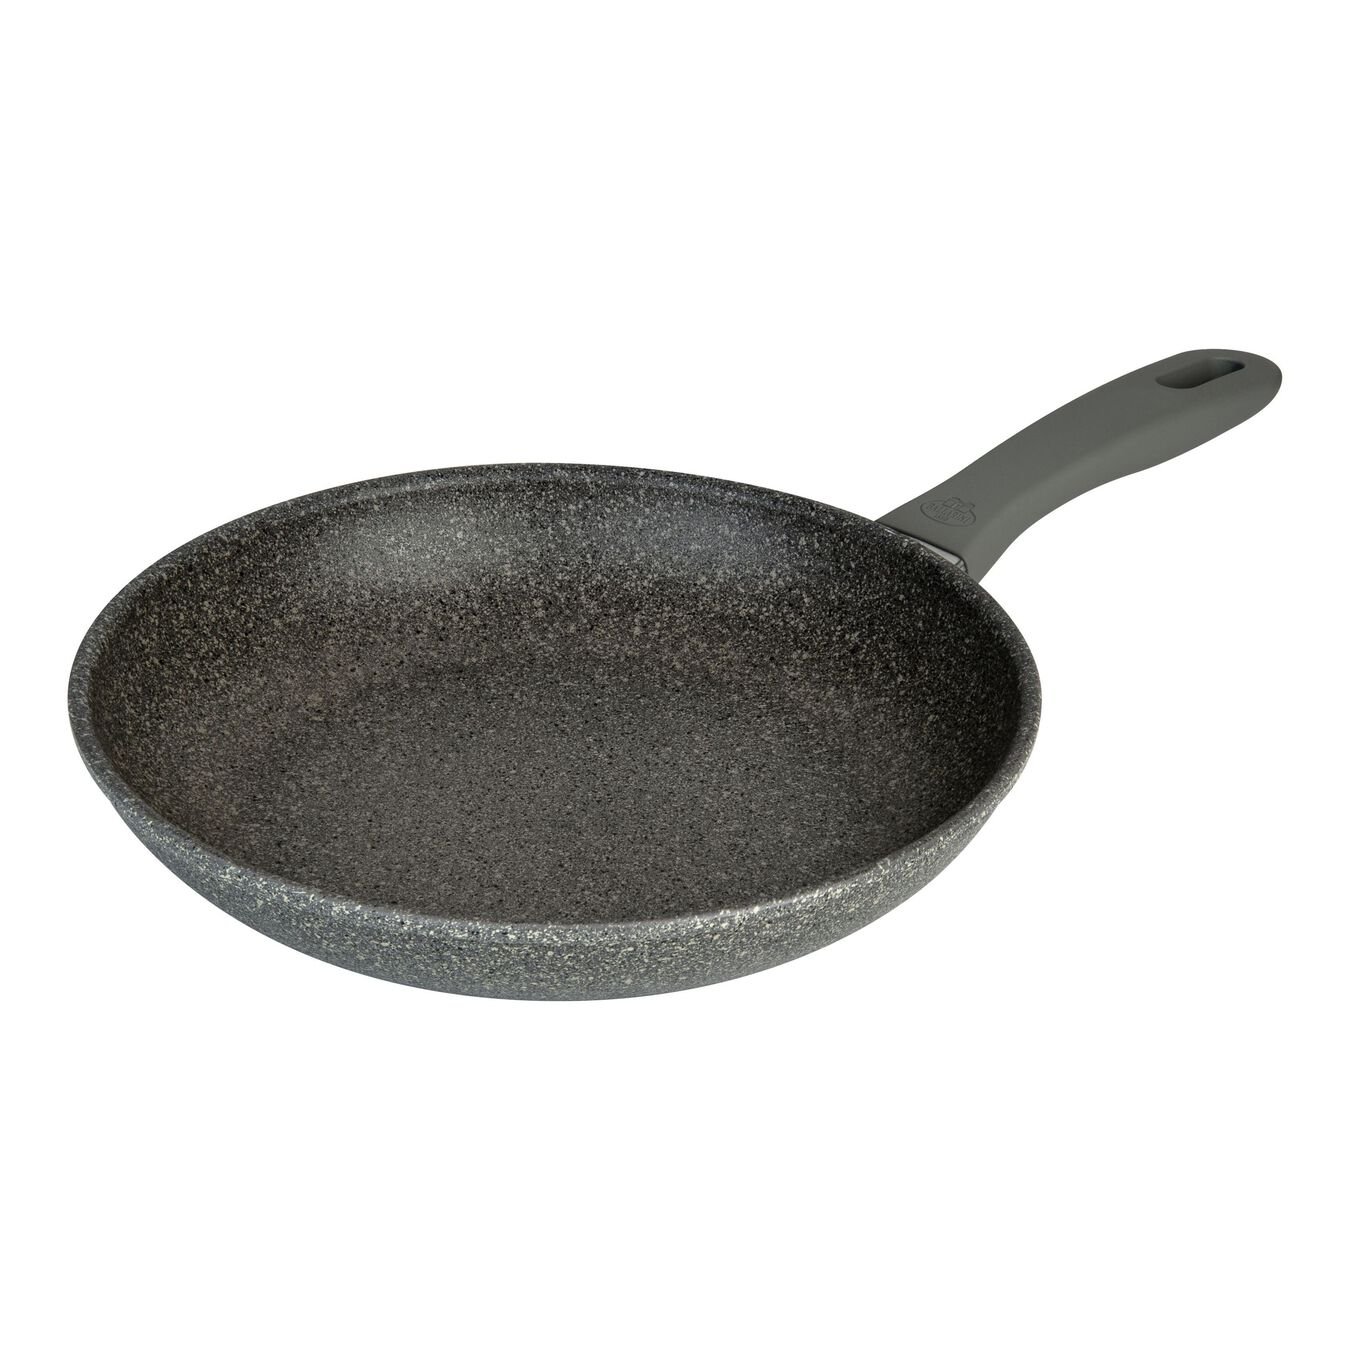 32 cm / 12.5 inch aluminium Frying pan,,large 1